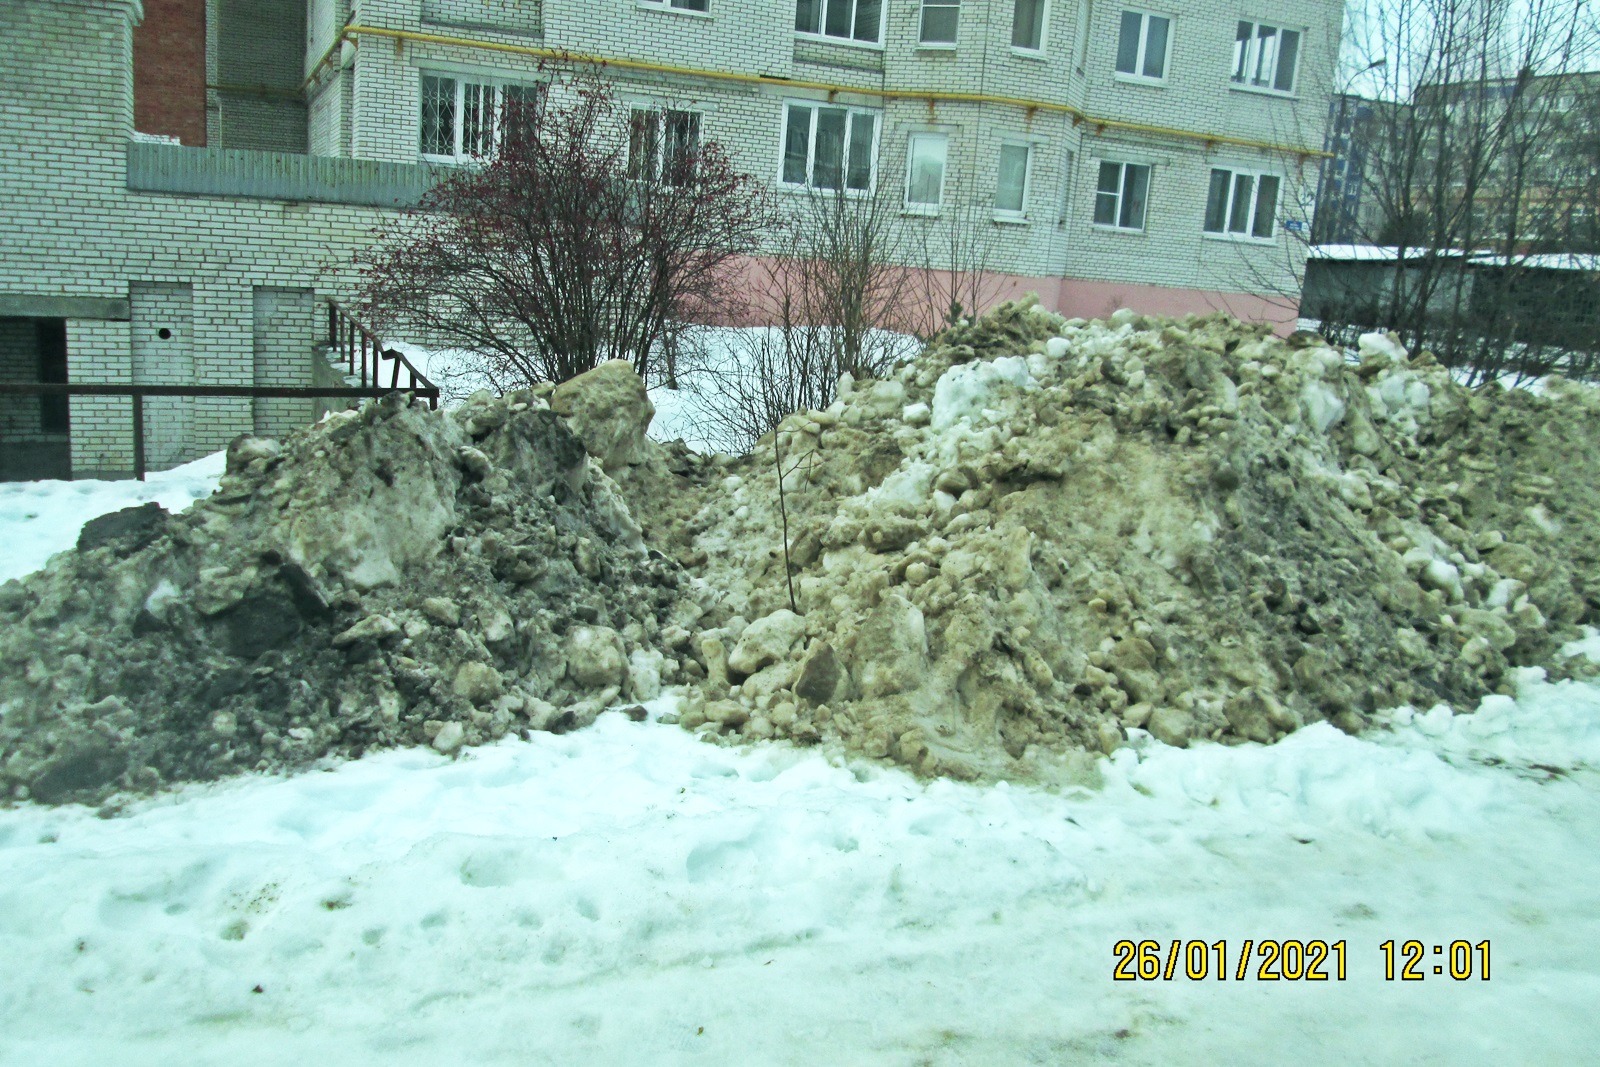 0538 Снег, смешанный с грязью и реагентами, складирован на газоне, ул. Н. Дуброва 32.jpg